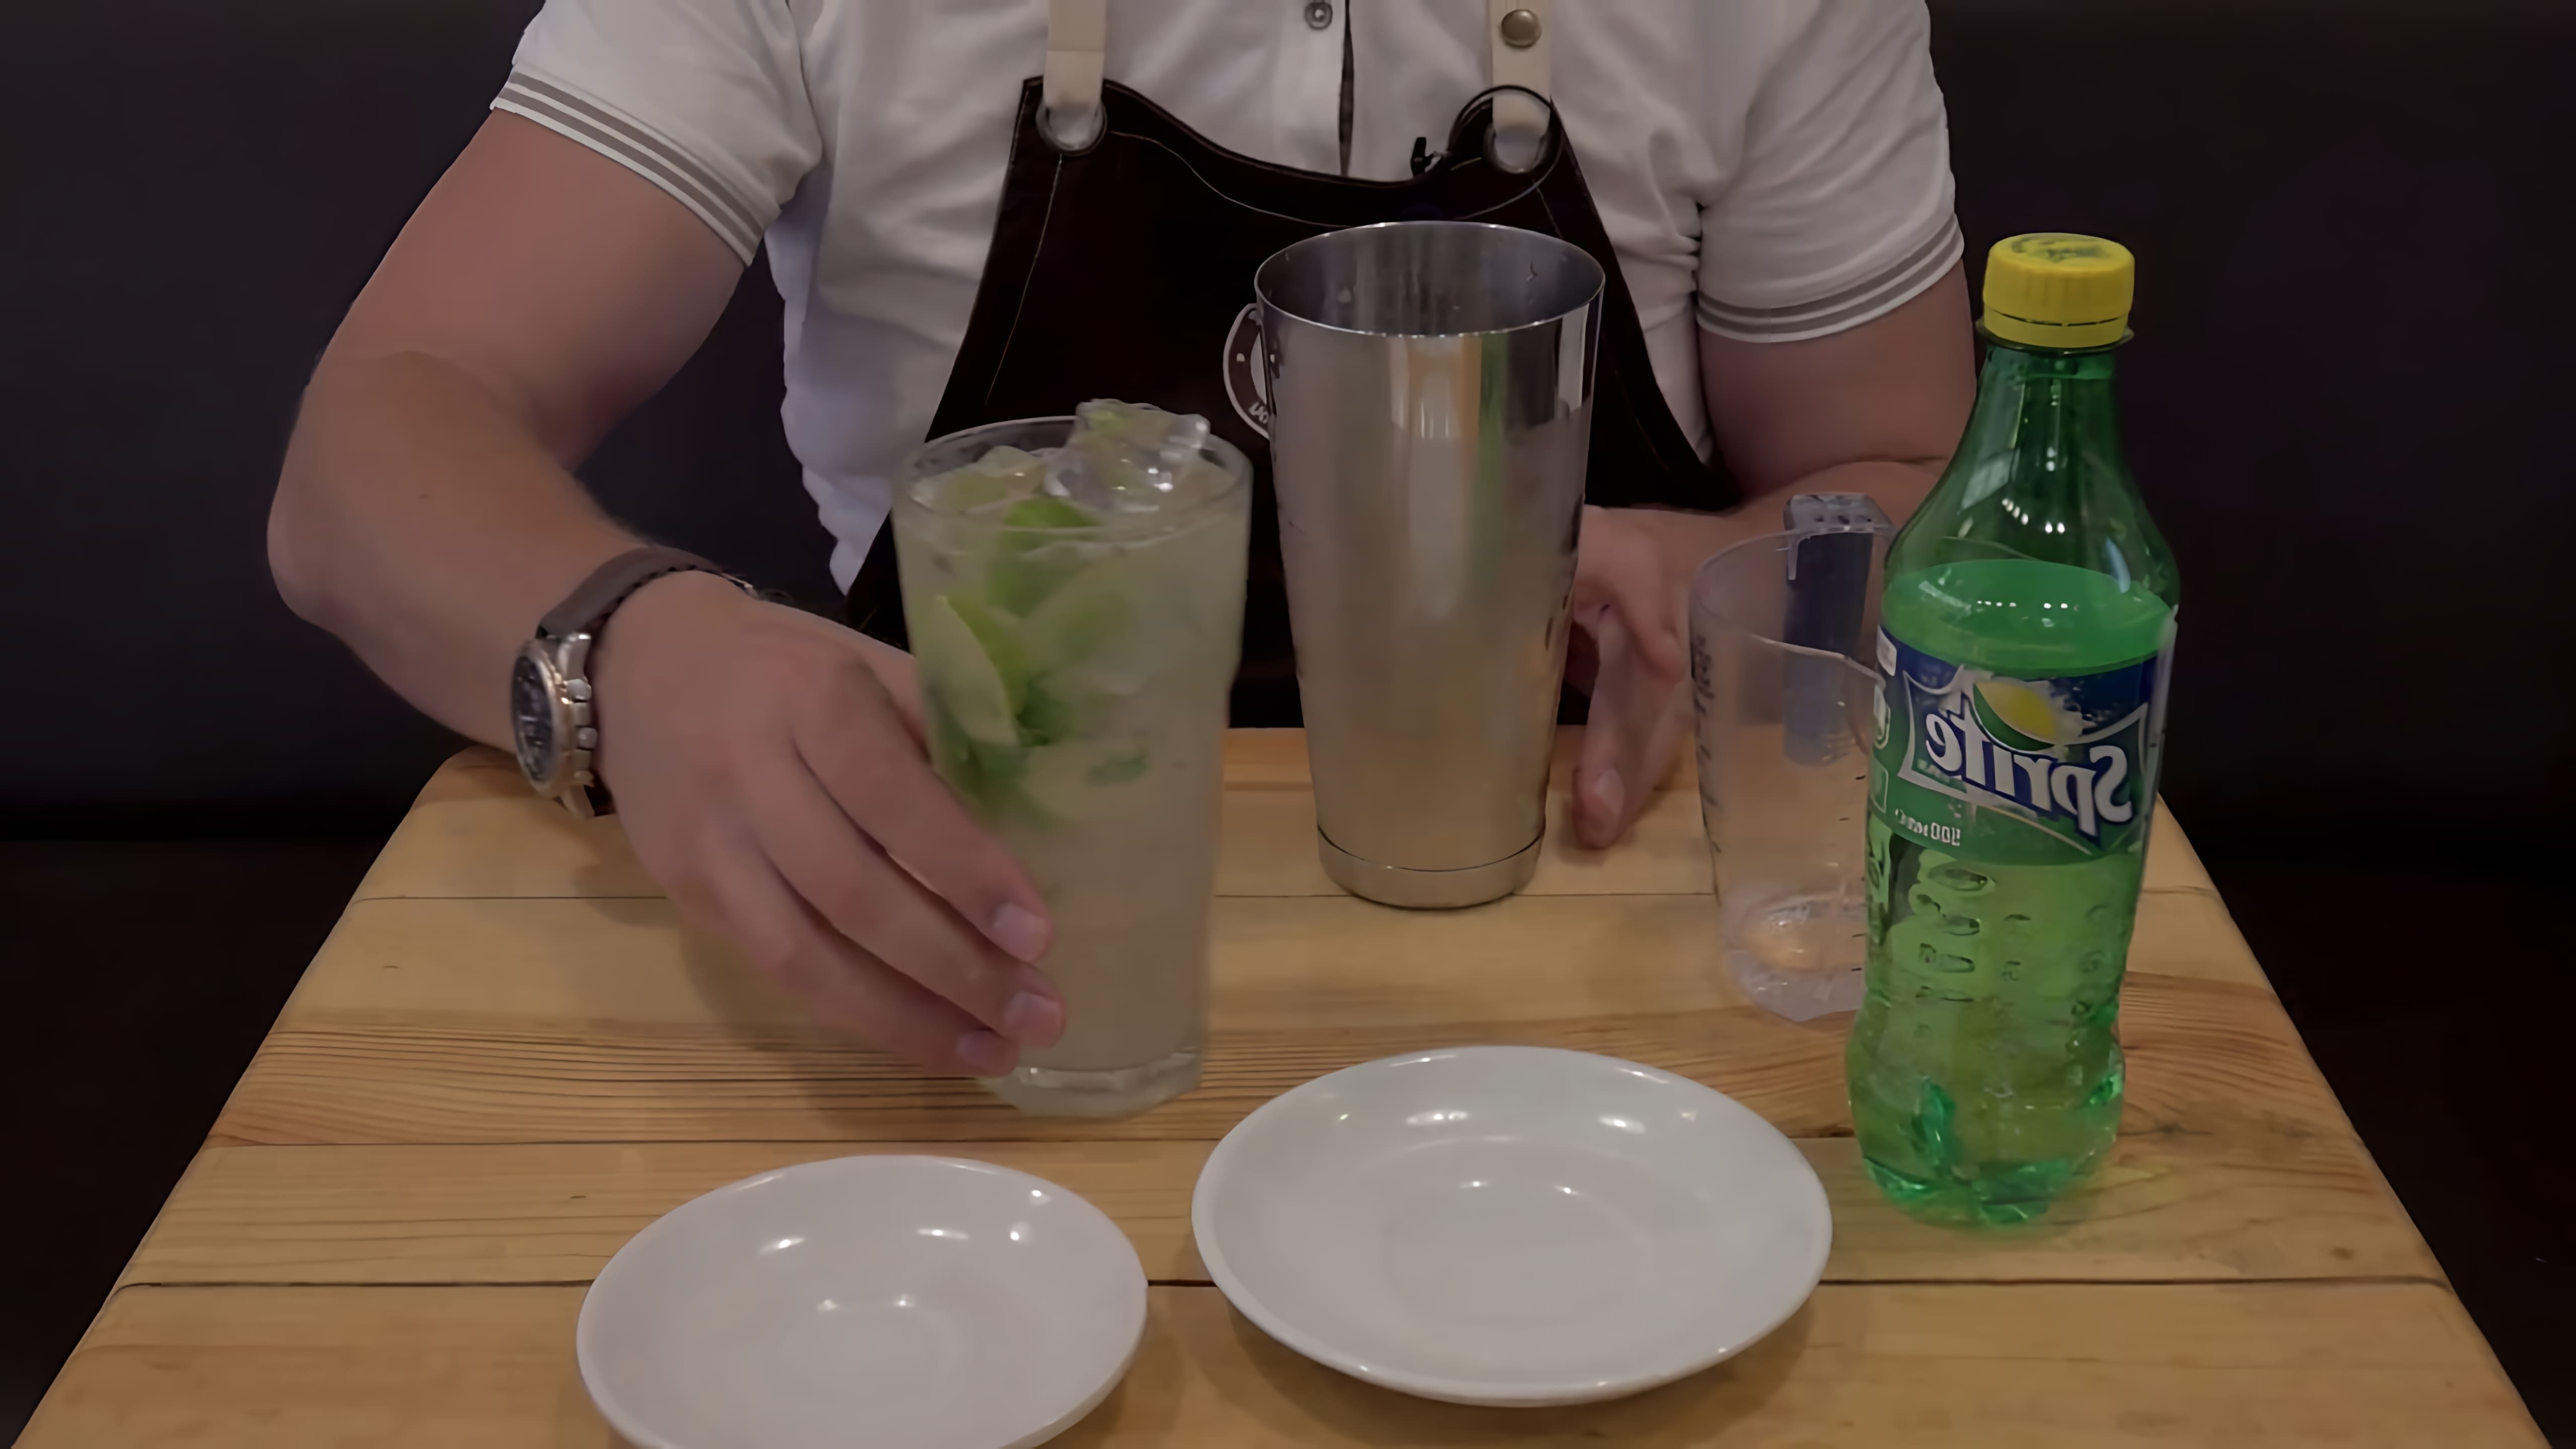 В этом видео демонстрируется процесс приготовления мохито - холодного напитка, который можно легко сделать дома